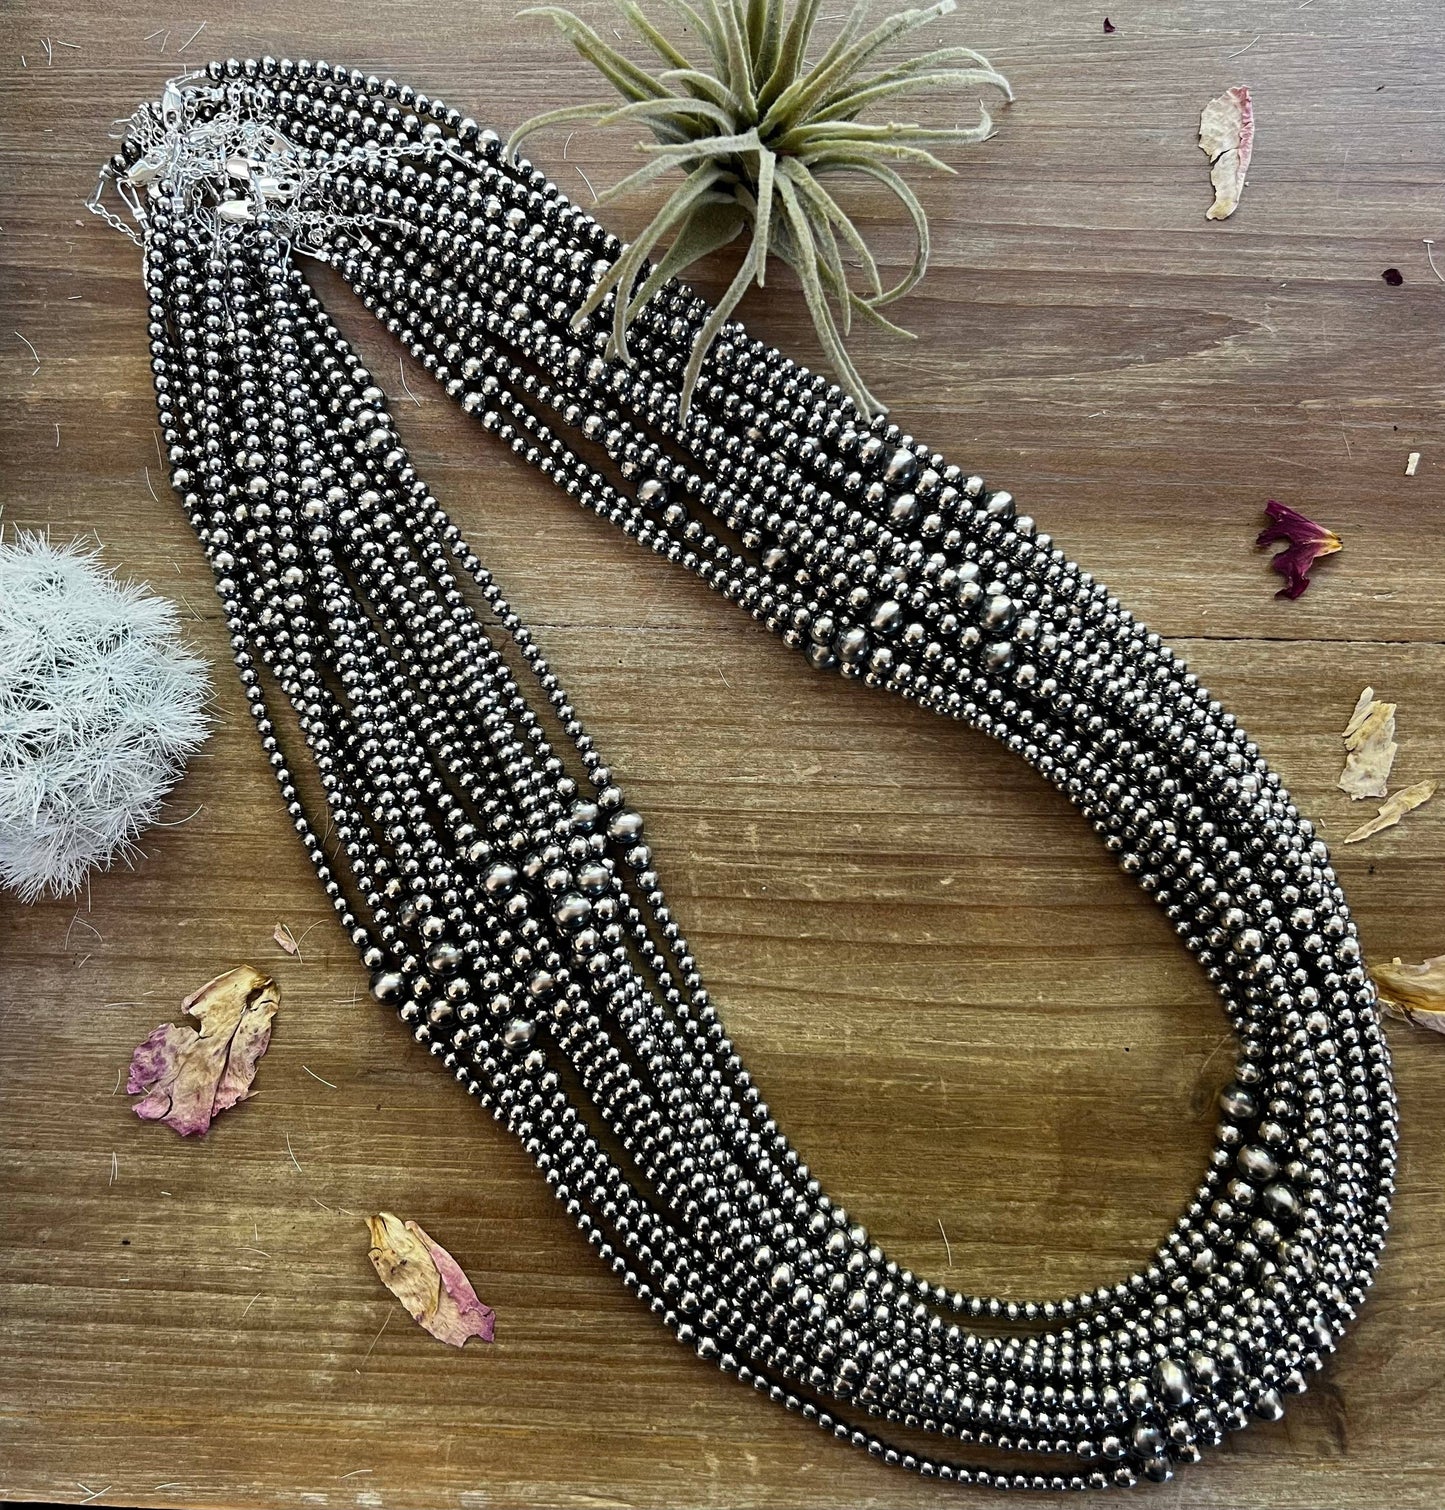 28 inch Navajo Necklace